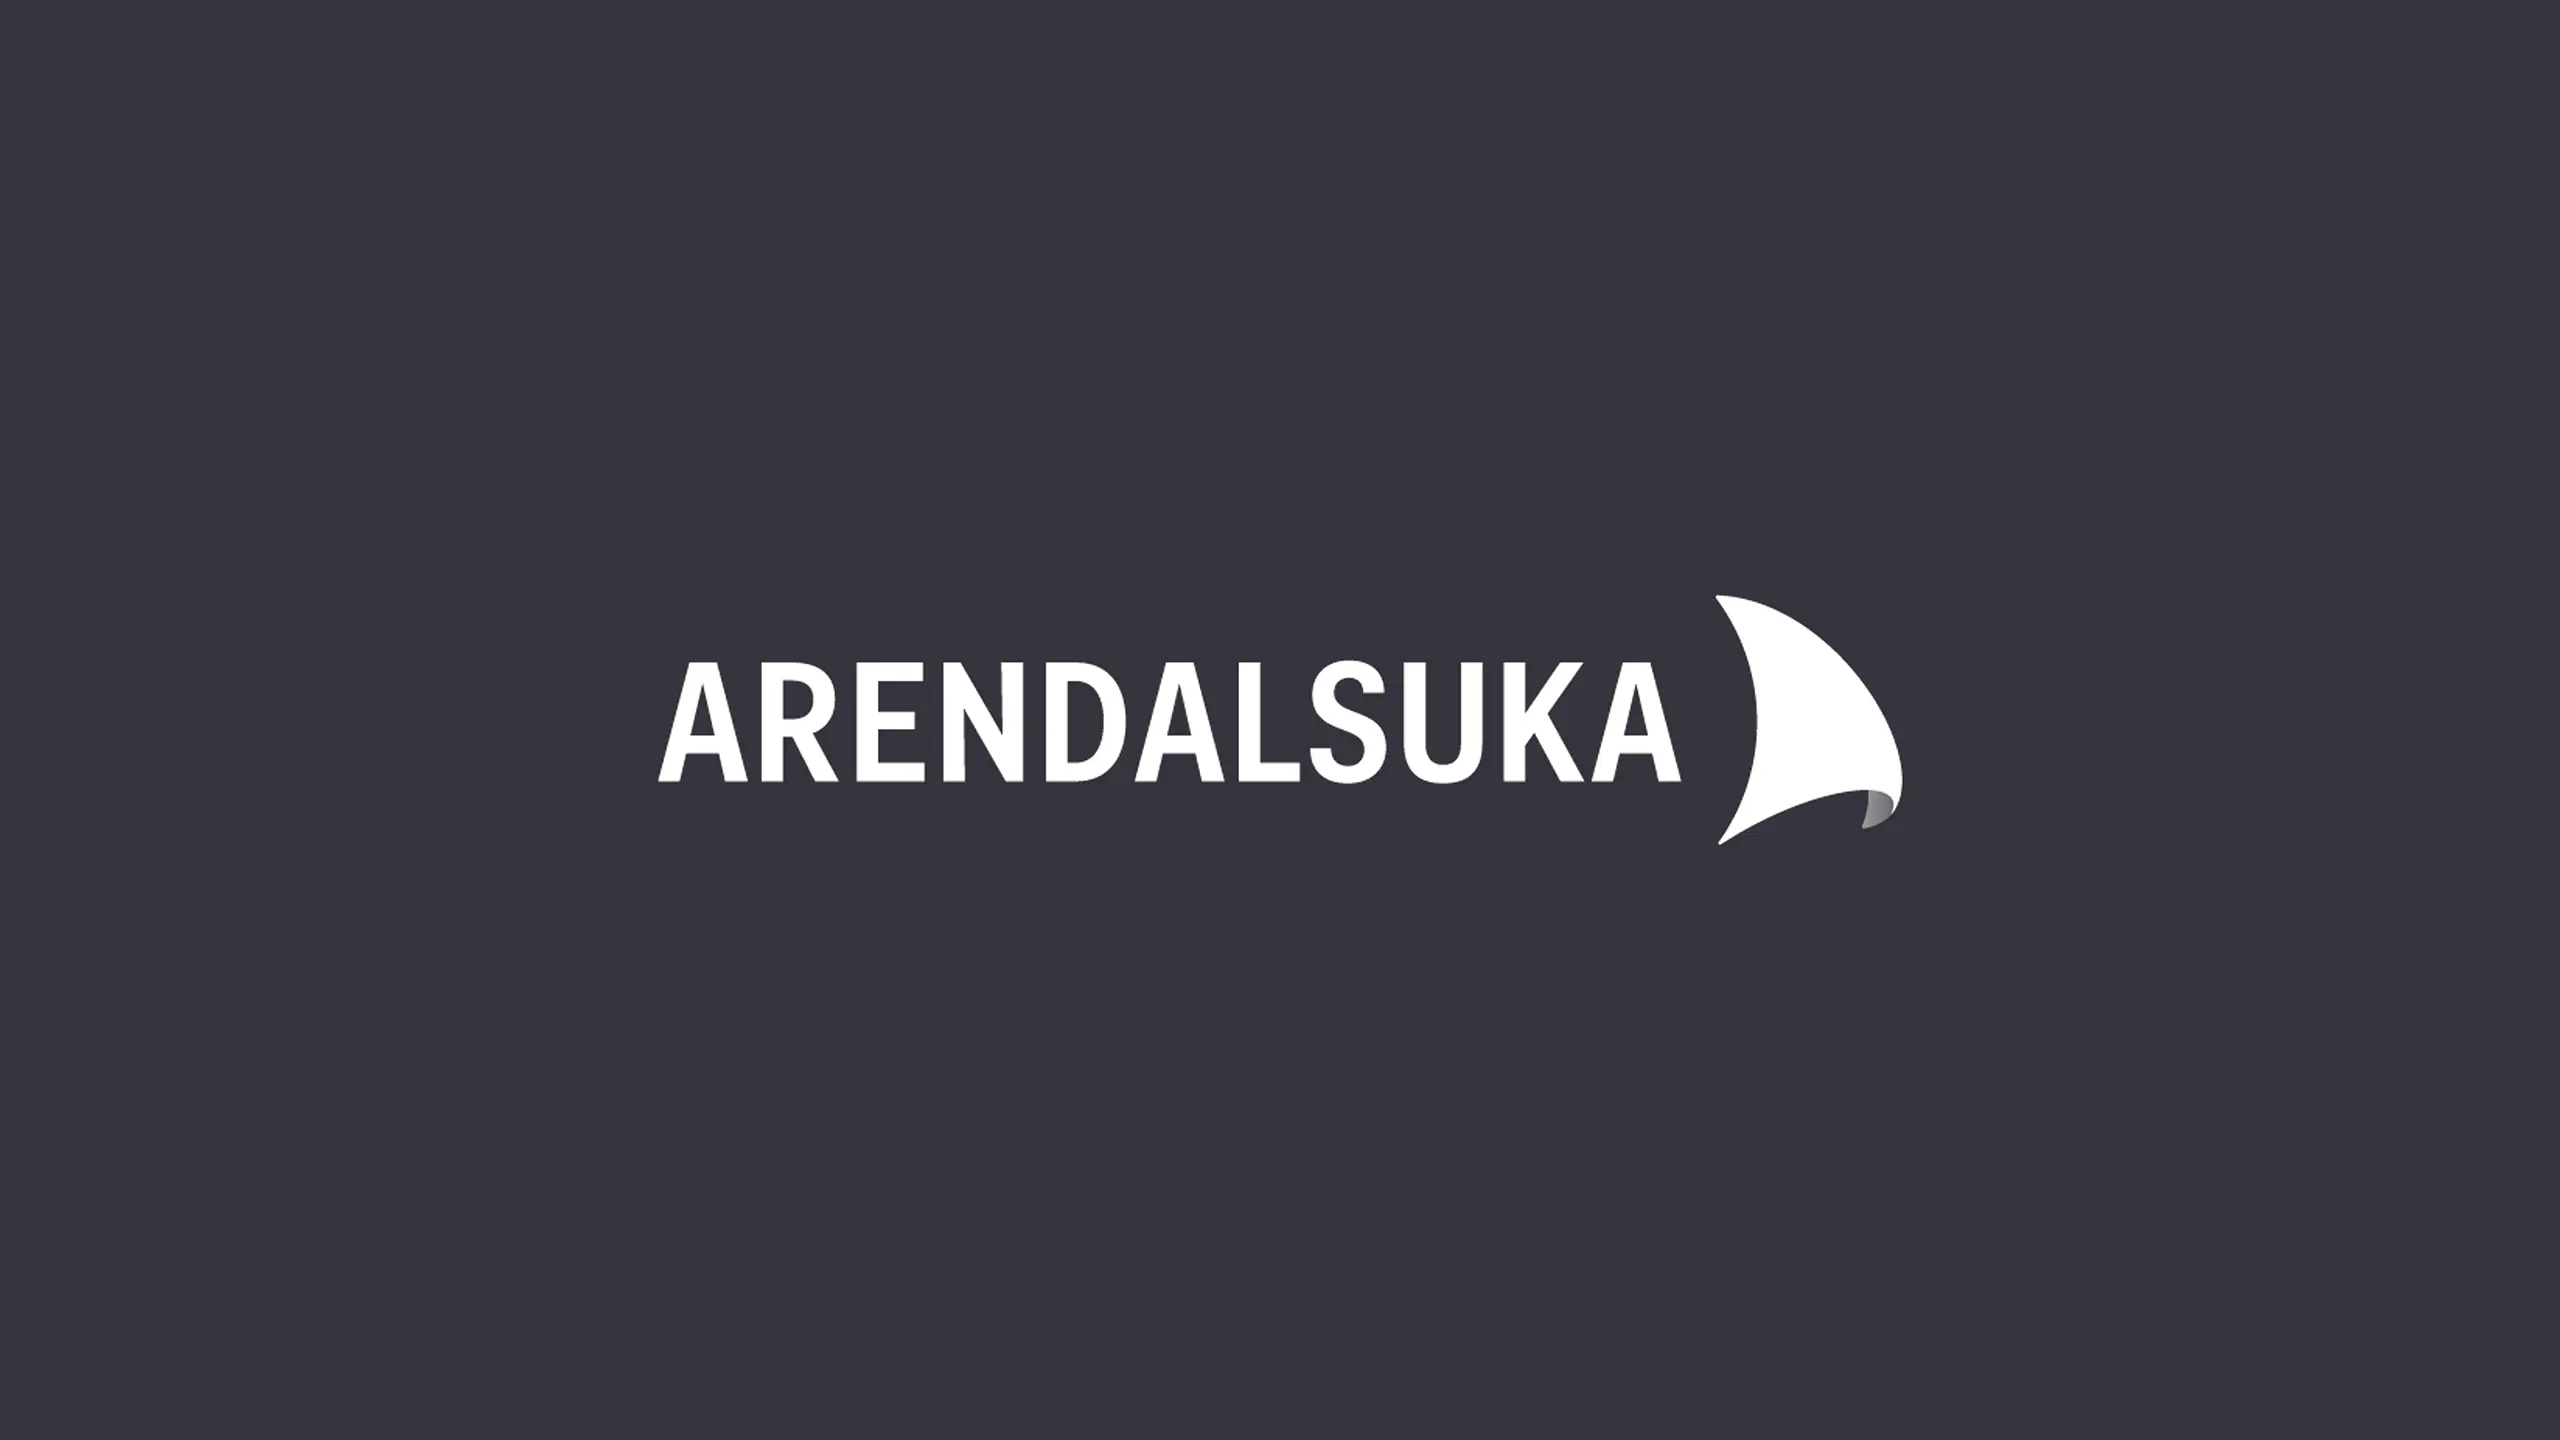 arendalsuka logo on dark background